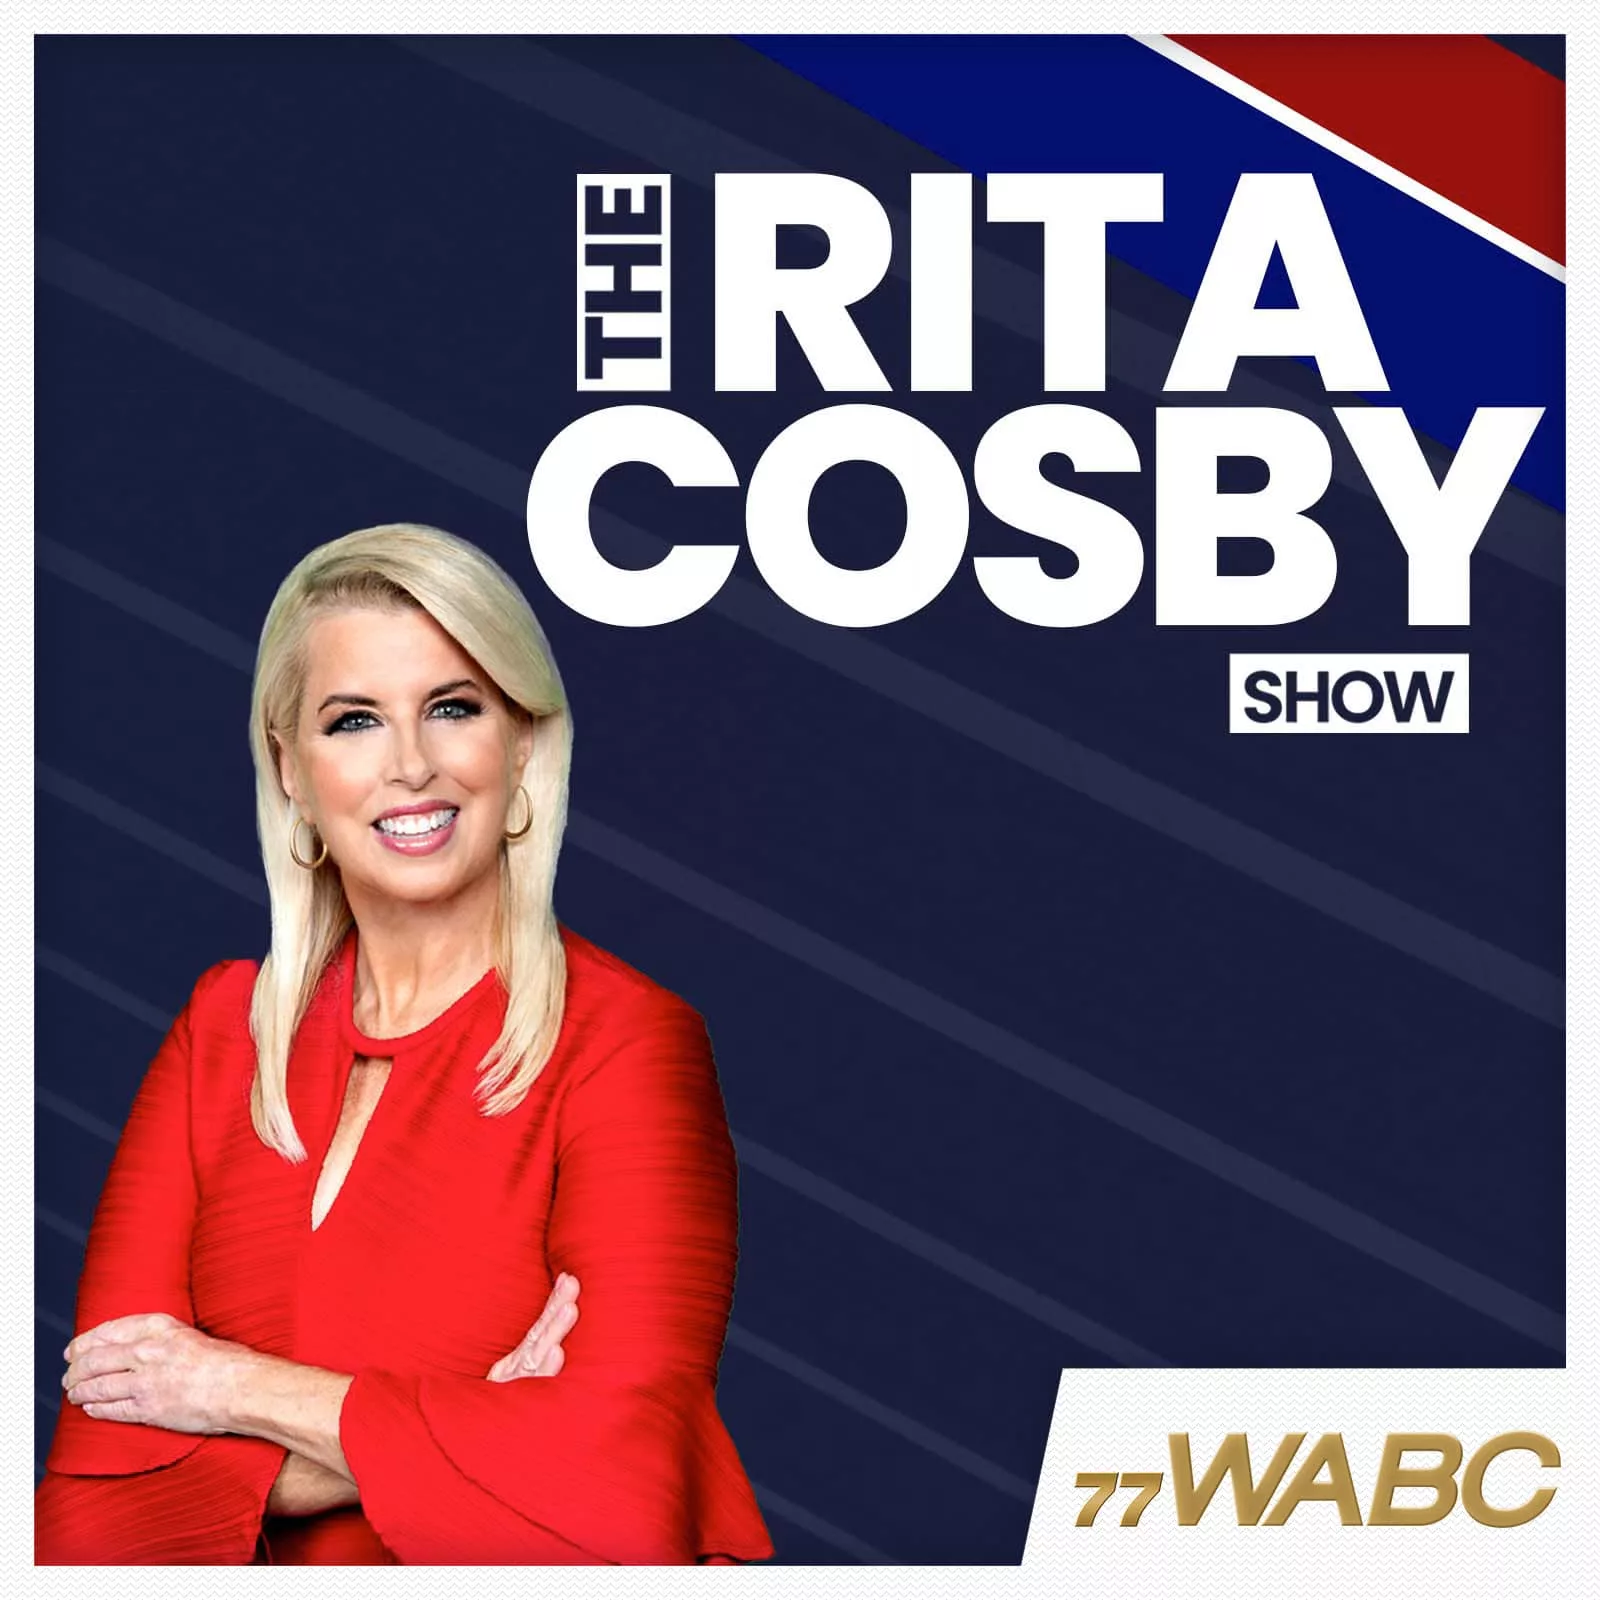 rita-cosby-podcast-new-logo22590